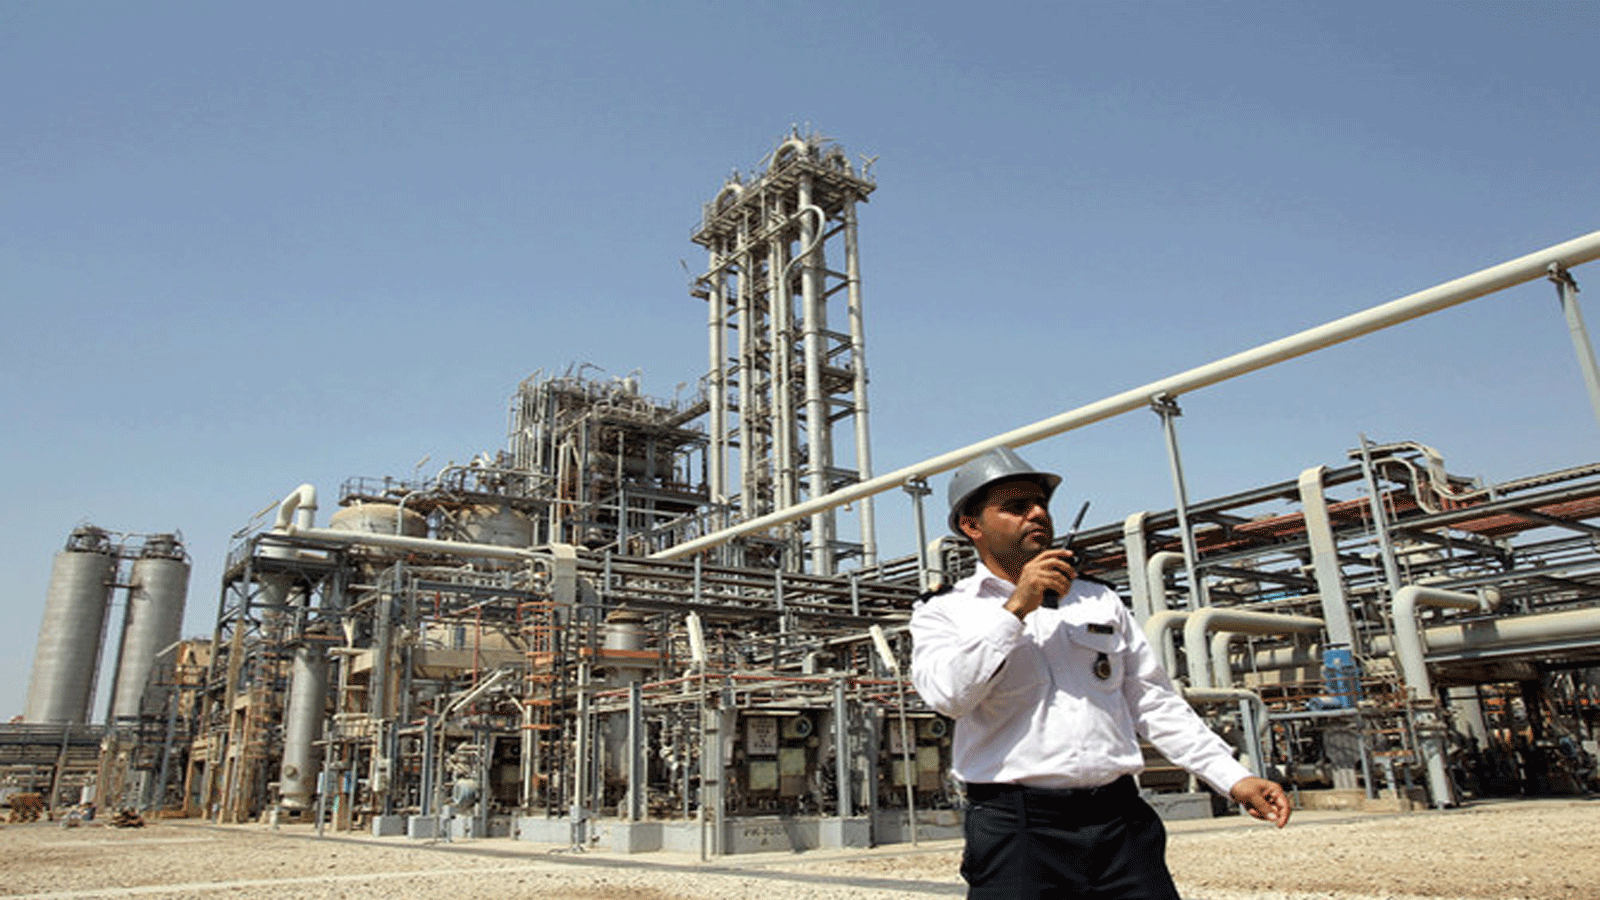 العقوبات الأميركية تستهدف صناعة البتروكيماويات الإيرانية، بما في ذلك أكبر مجموعة بتروكيماويات قابضة في البلاد بسبب دعمها المالي للحرس الثوري الإسلامي.